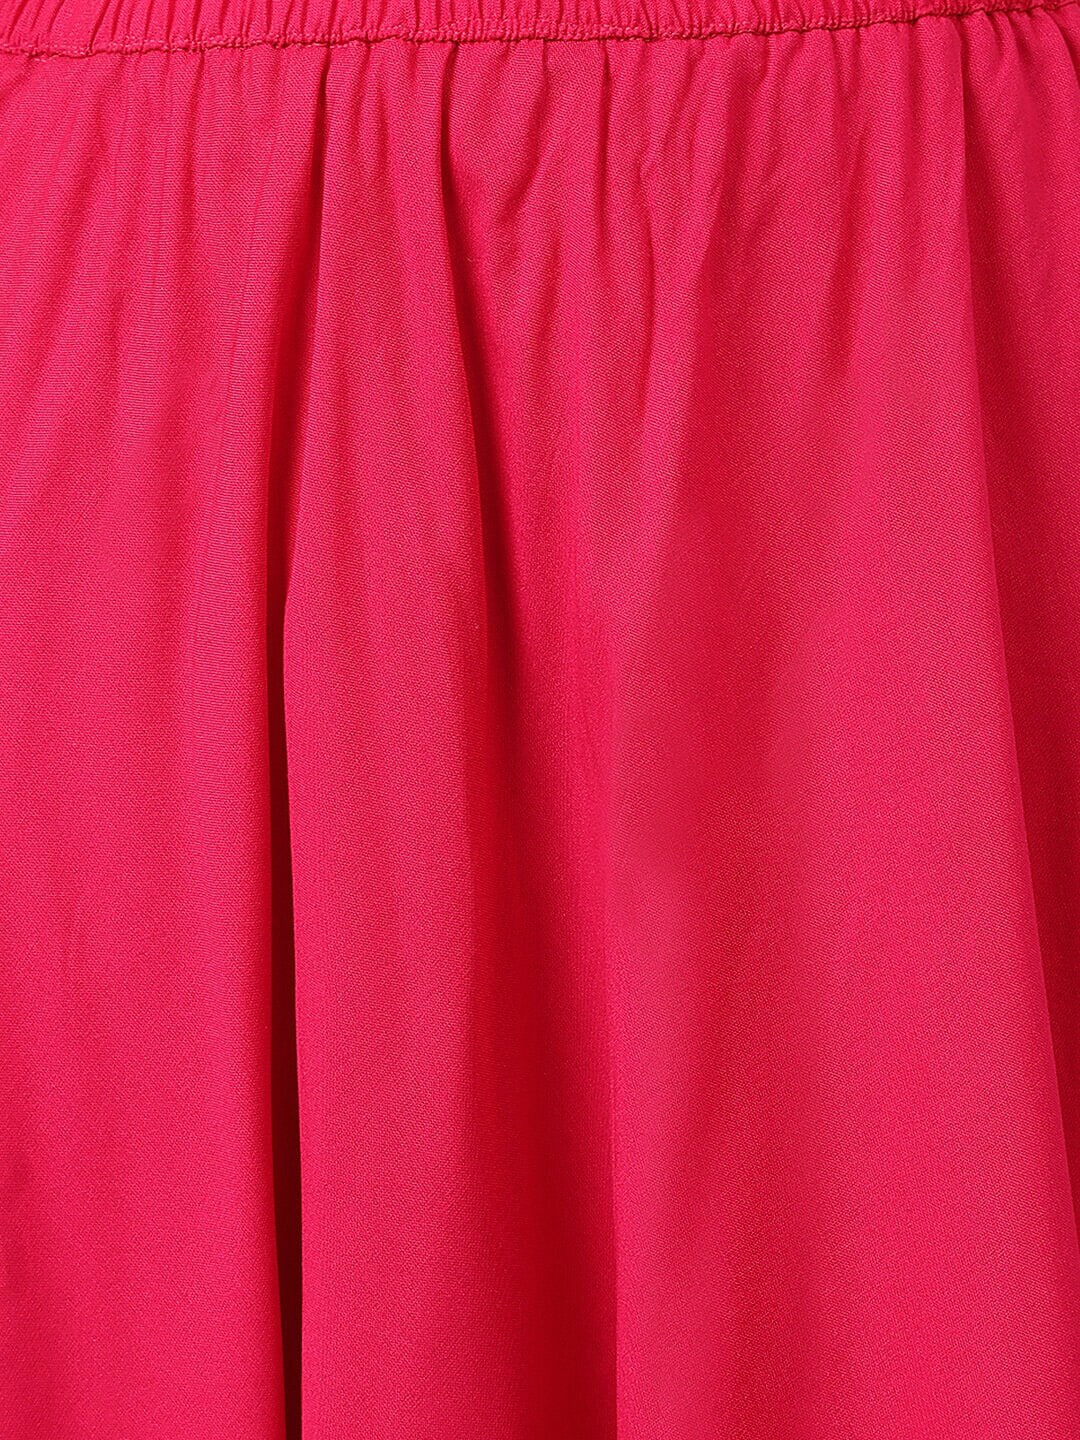 Khushal K Women Pink Ethnic Motifs Printed Kurta with Skirt - Distacart